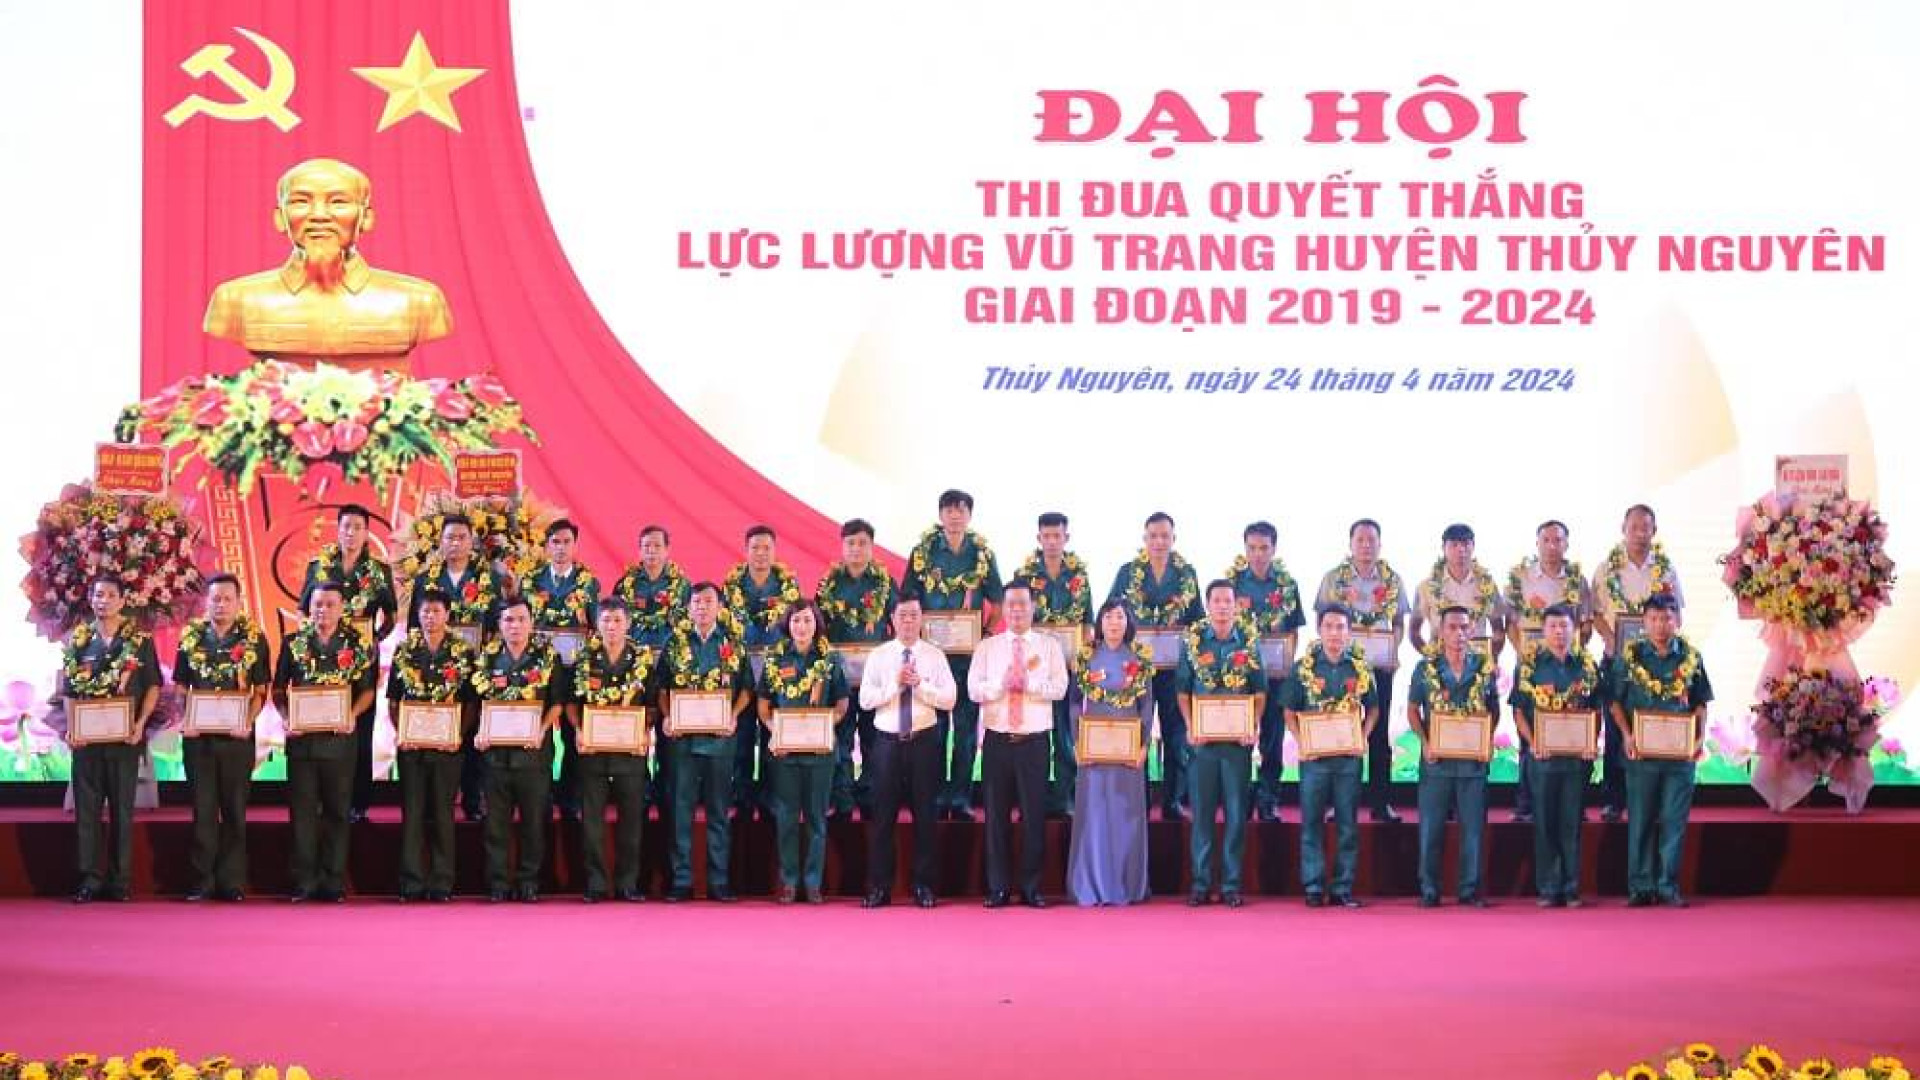 Đại hội thi đua Quyết thắng LLVT huyện Thủy Nguyên giai đoạn 2019- 2024